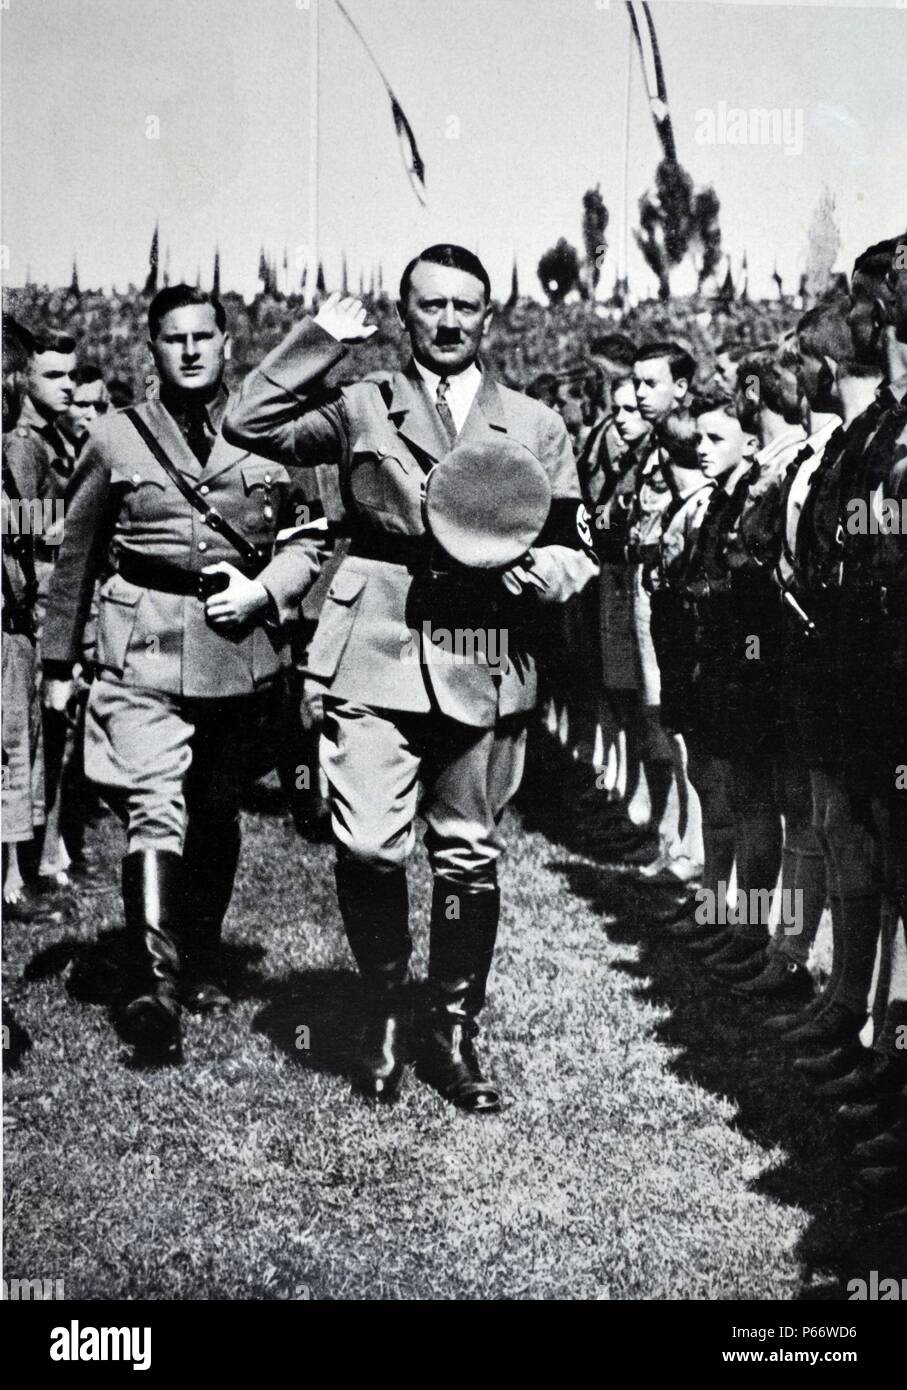 Adolf Hitler 1889 - 1945. Homme politique allemand et le leader du parti nazi, rend hommage à la jeunesse hitlérienne Rally. Rudolf Hess et Baldur von Schirach s'asseoir près de Hitler Banque D'Images